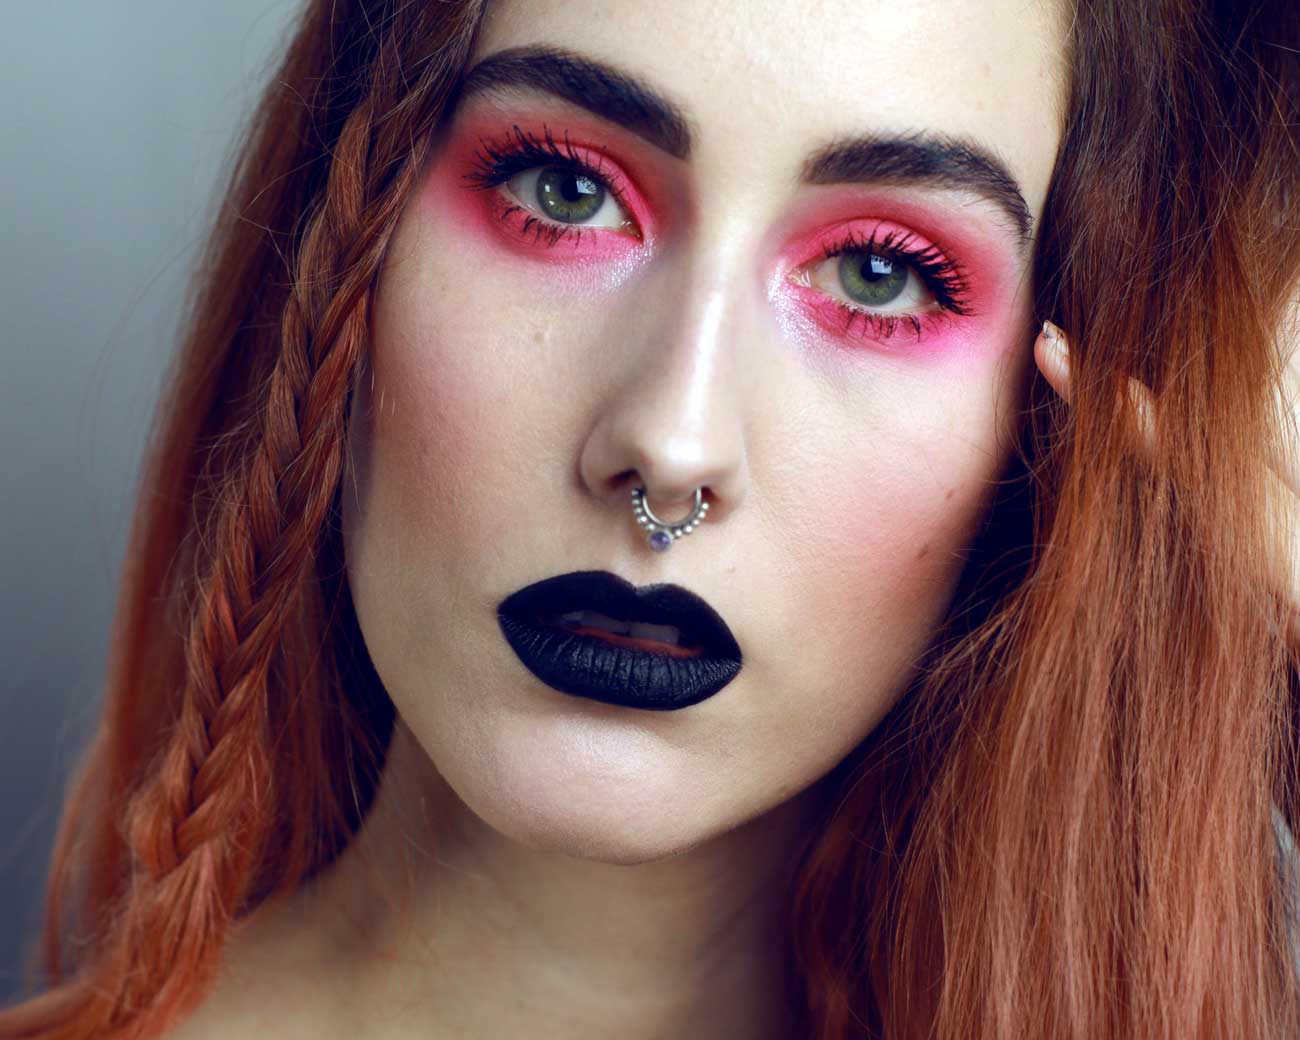 Neon pink eye makeup